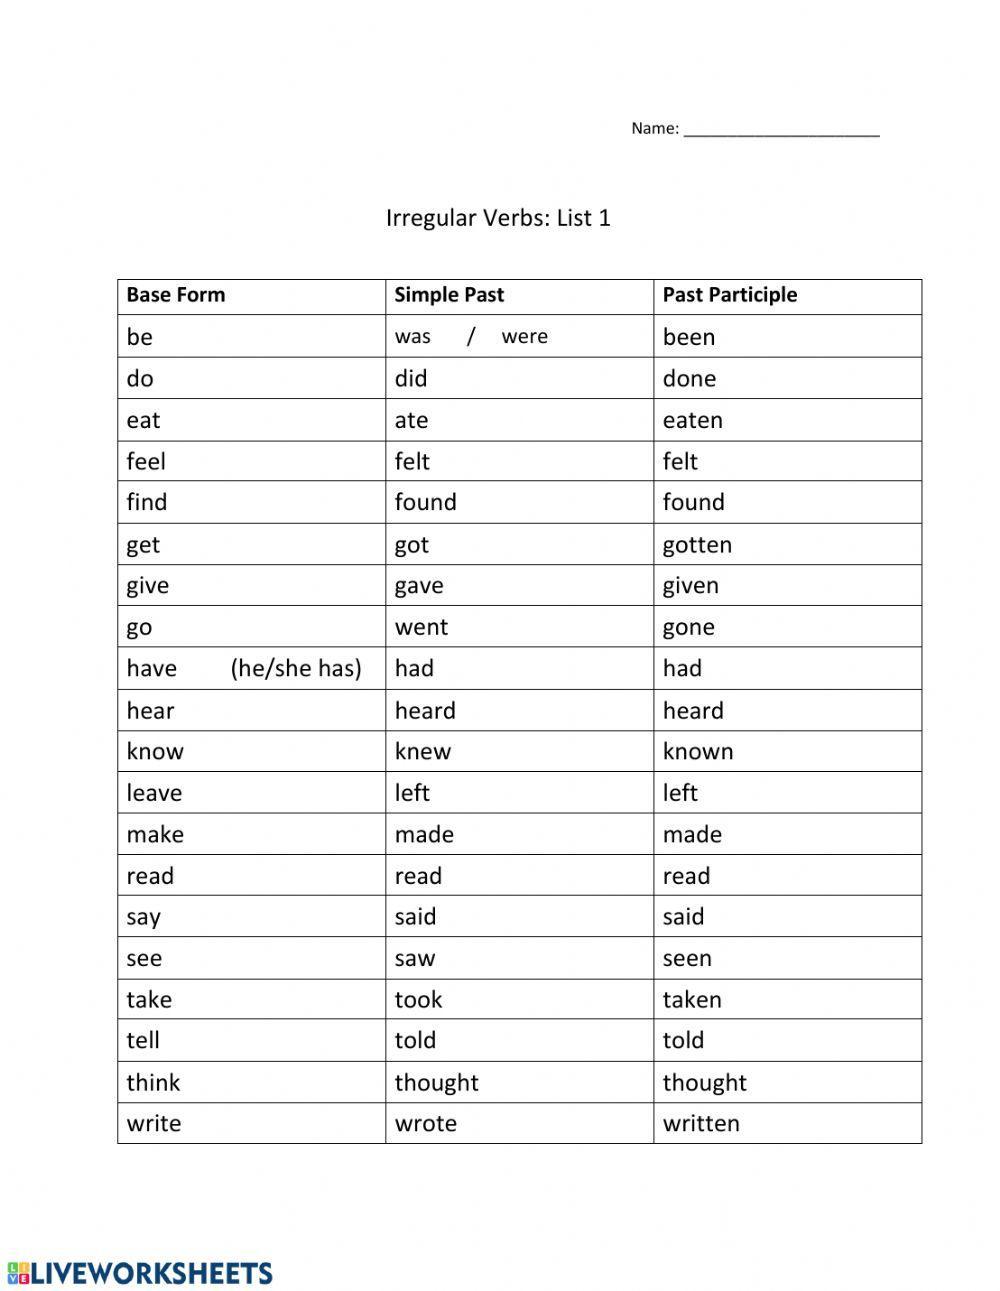 Top 20 Irregular Verbs - List